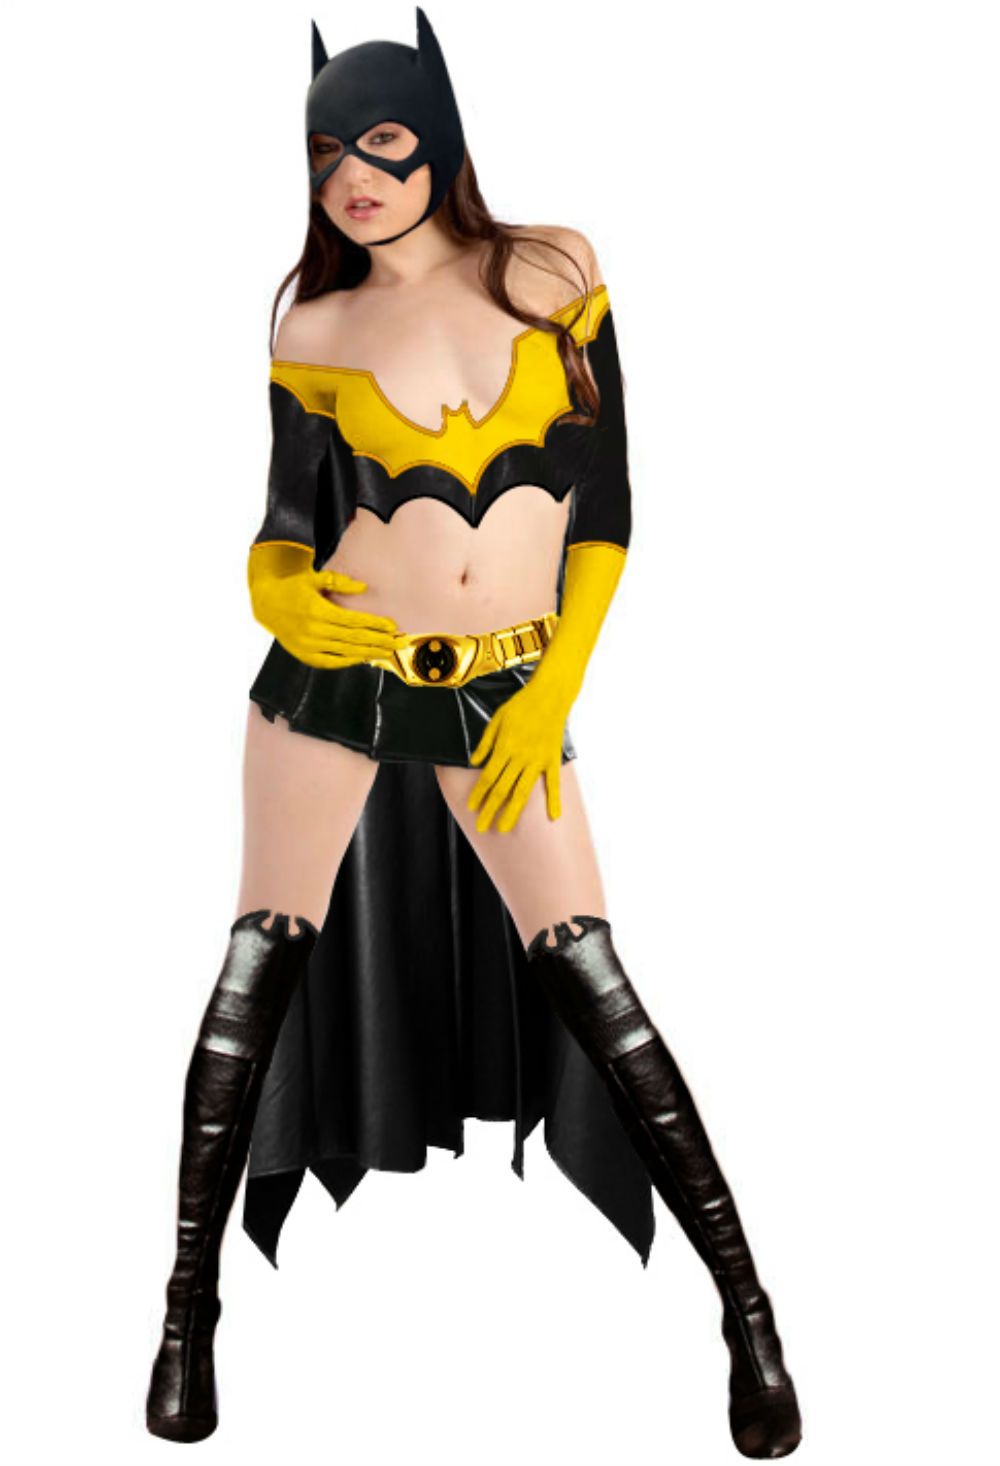 Sasha Grey as Batgirl